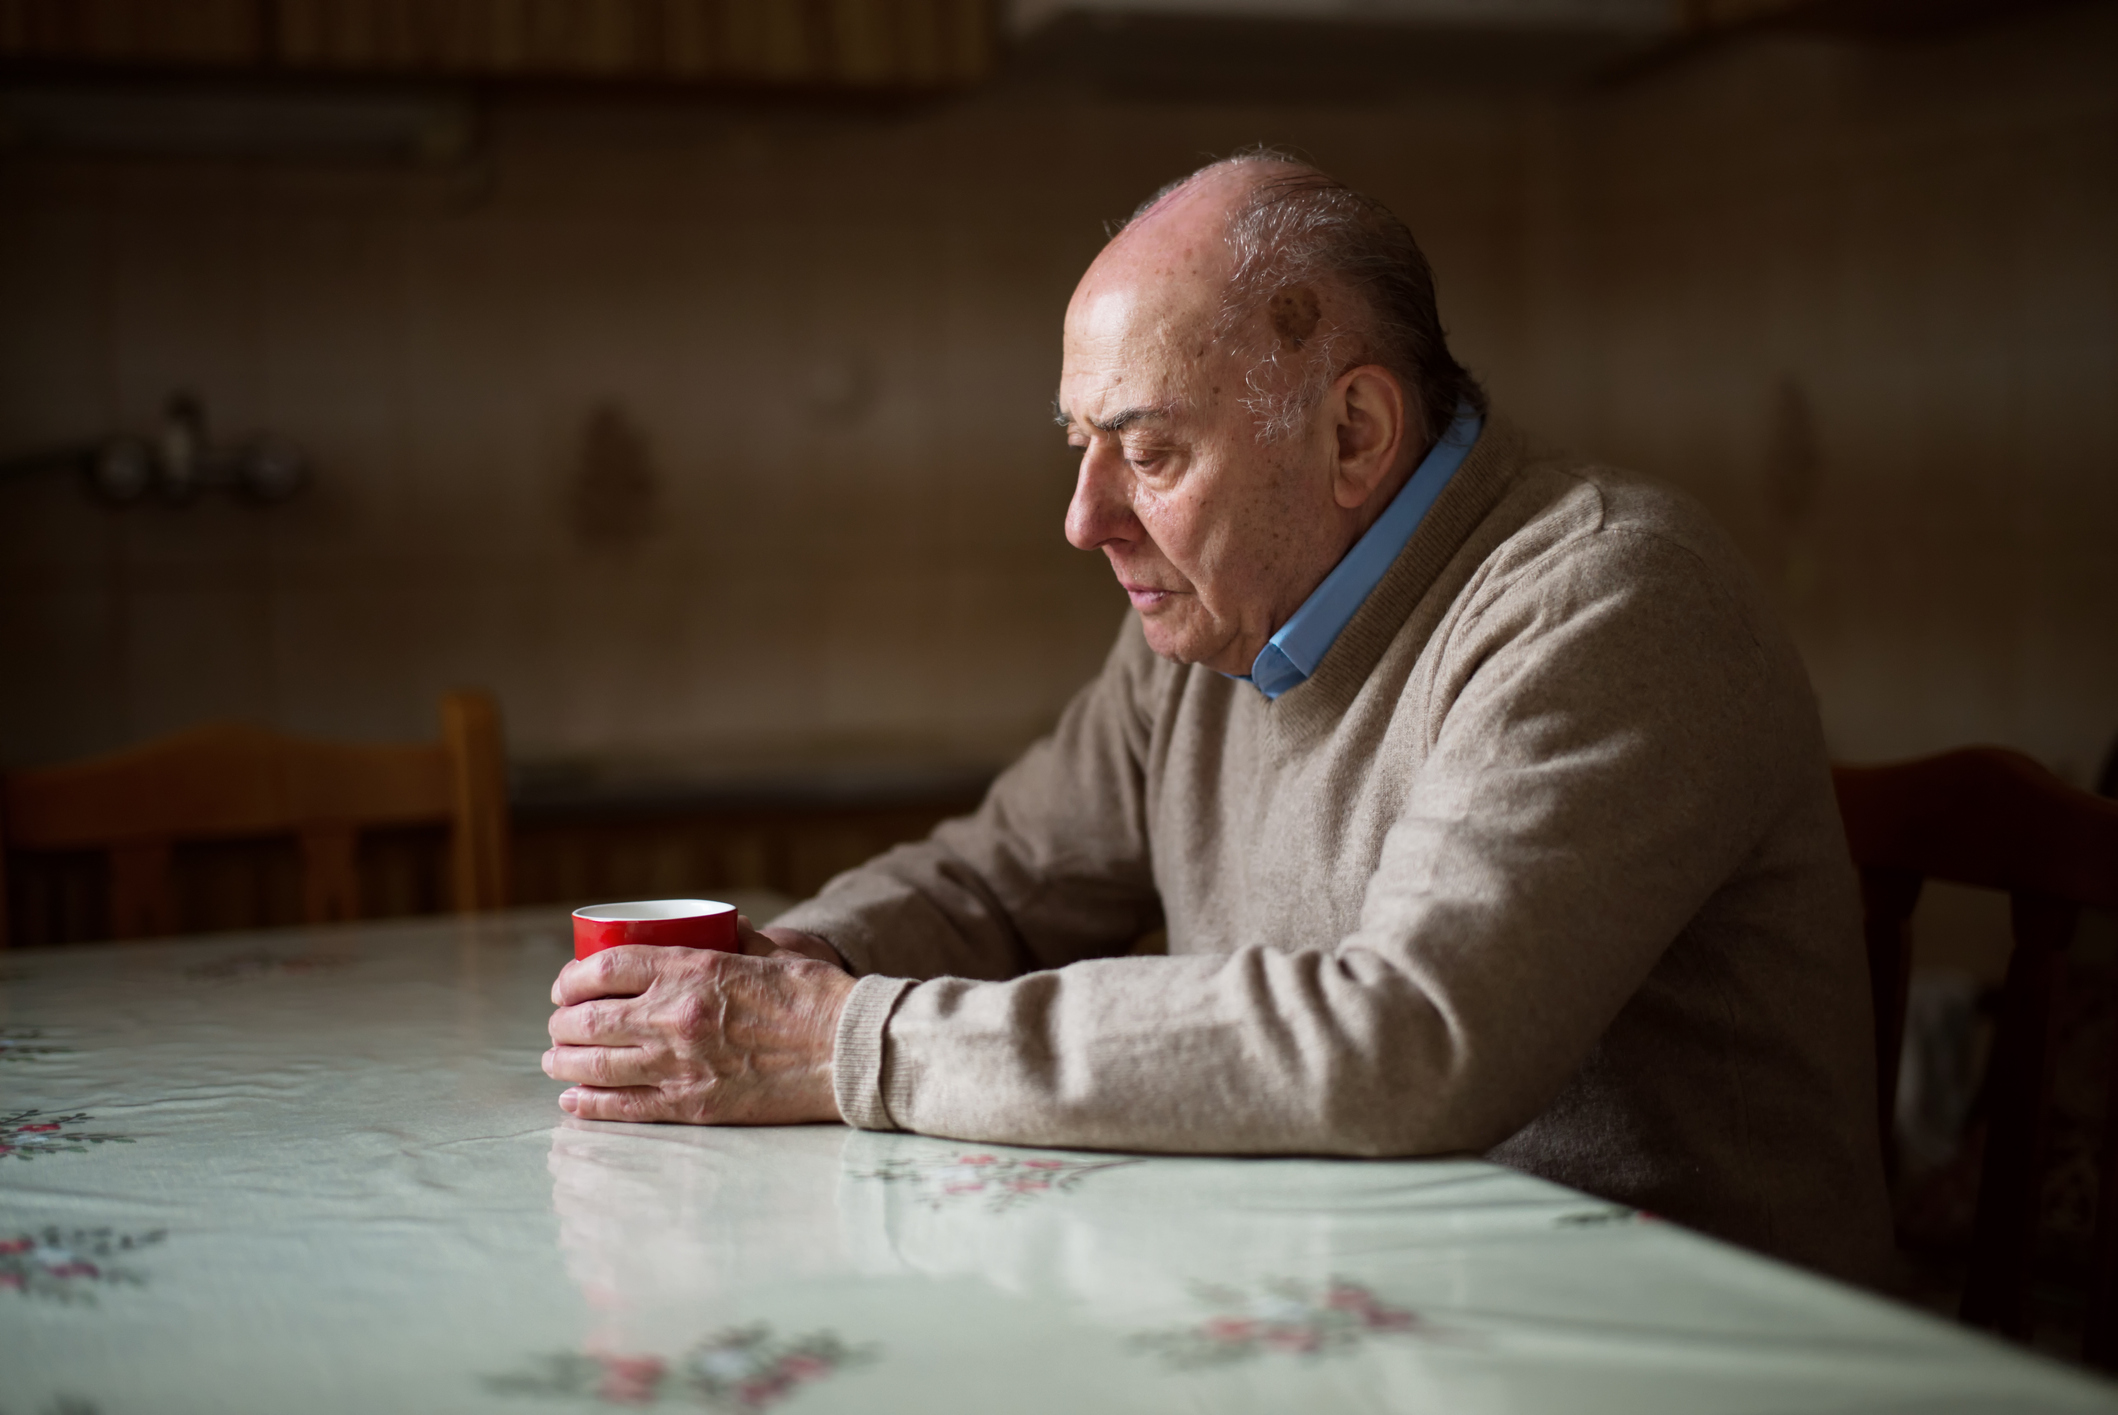 Das Foto zeigt einen älteren Mann, der gebeugt an einem Tisch sitzt und eine Tasse umklammert.